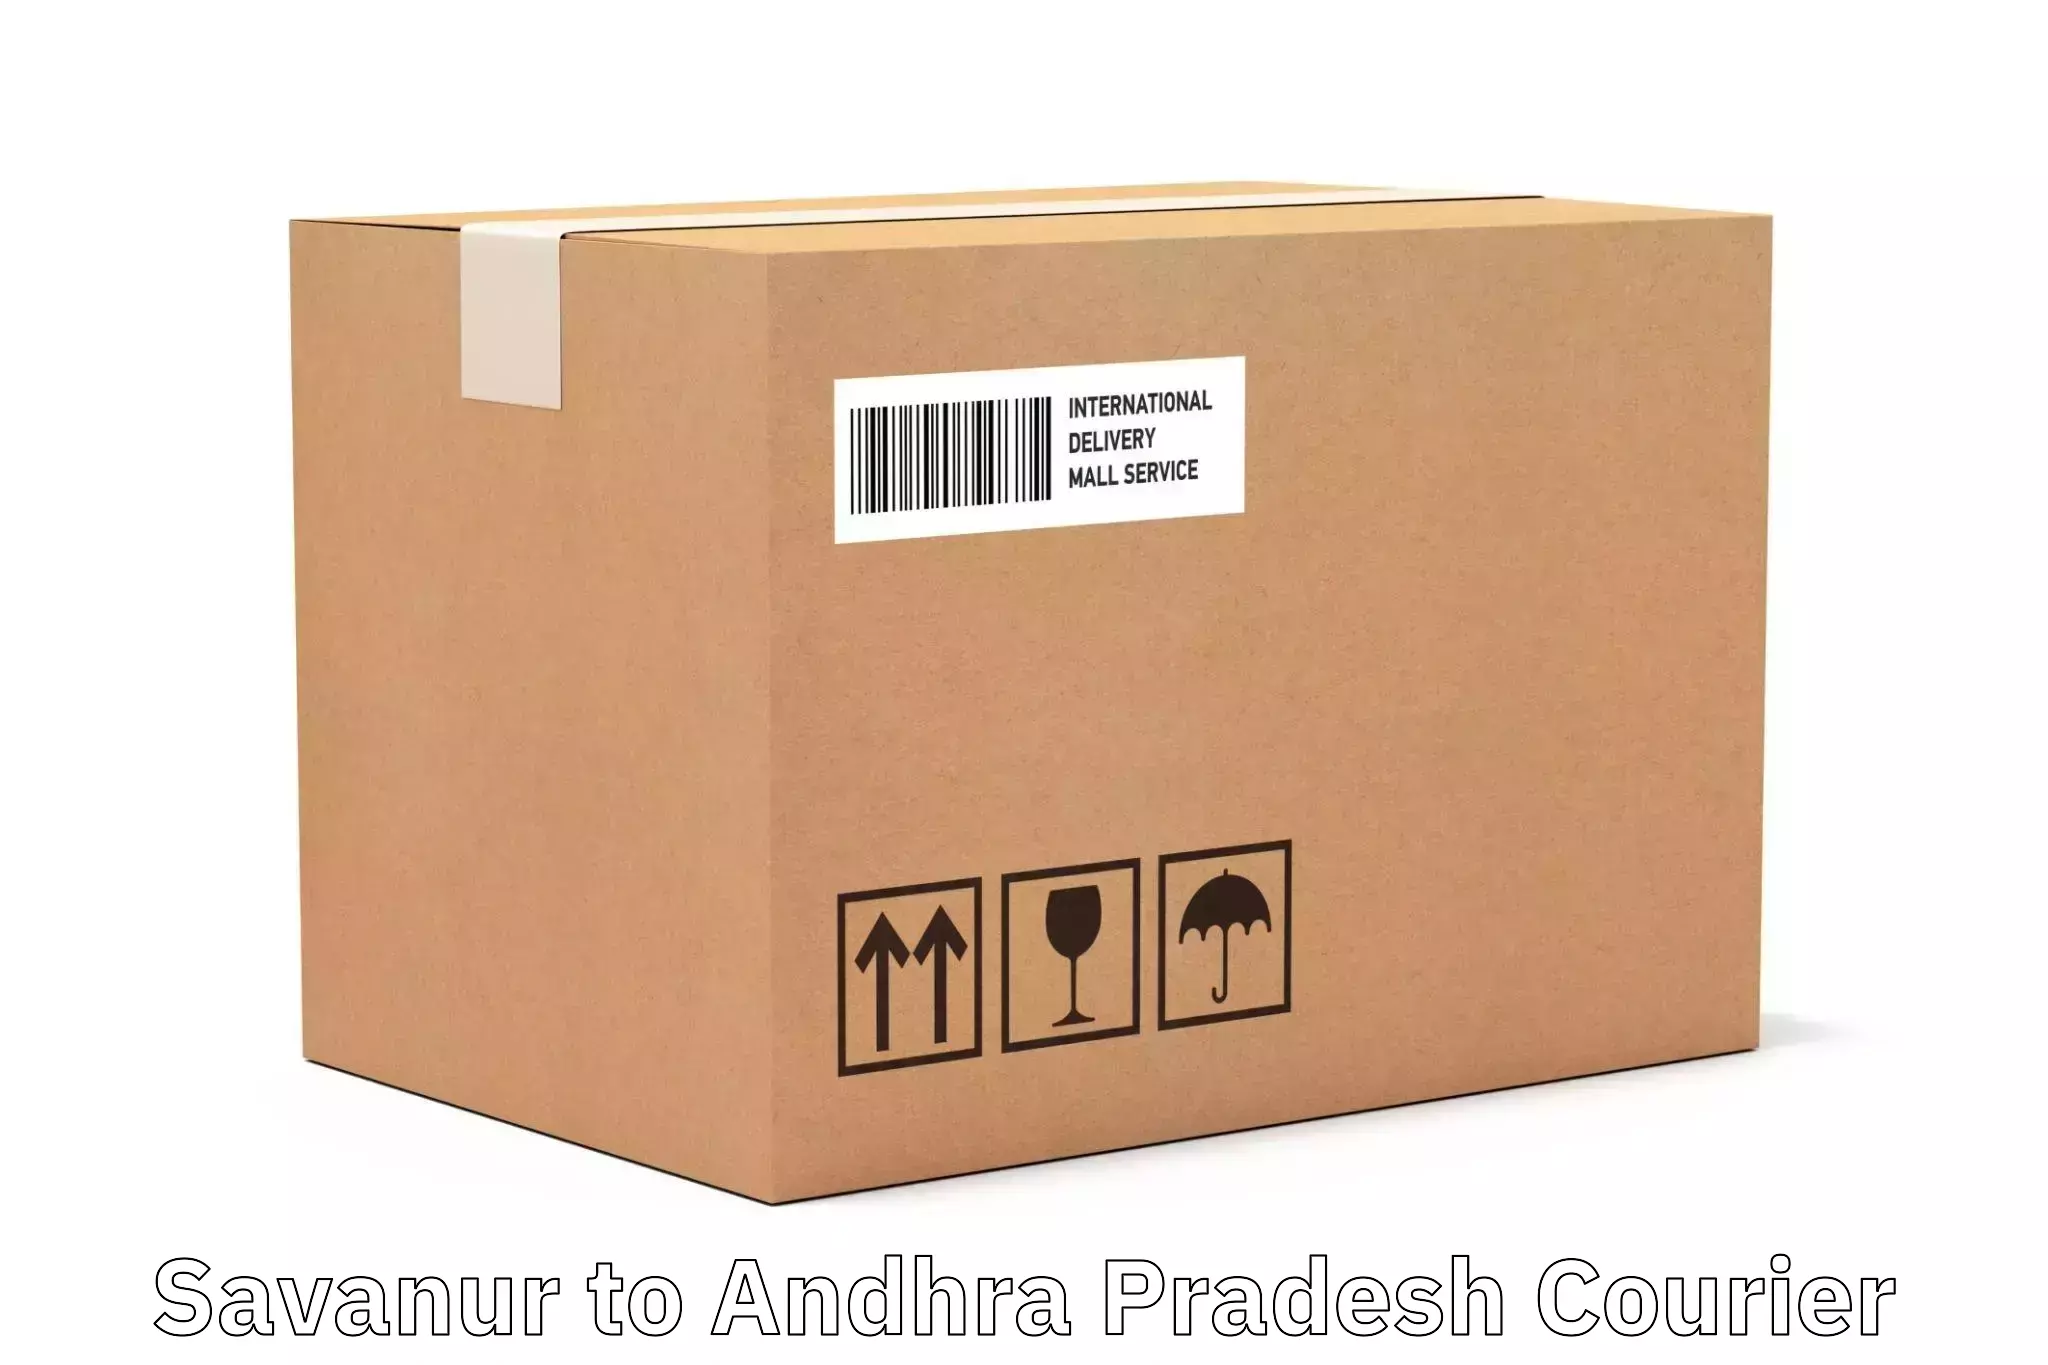 Customer-oriented courier services Savanur to Chittoor